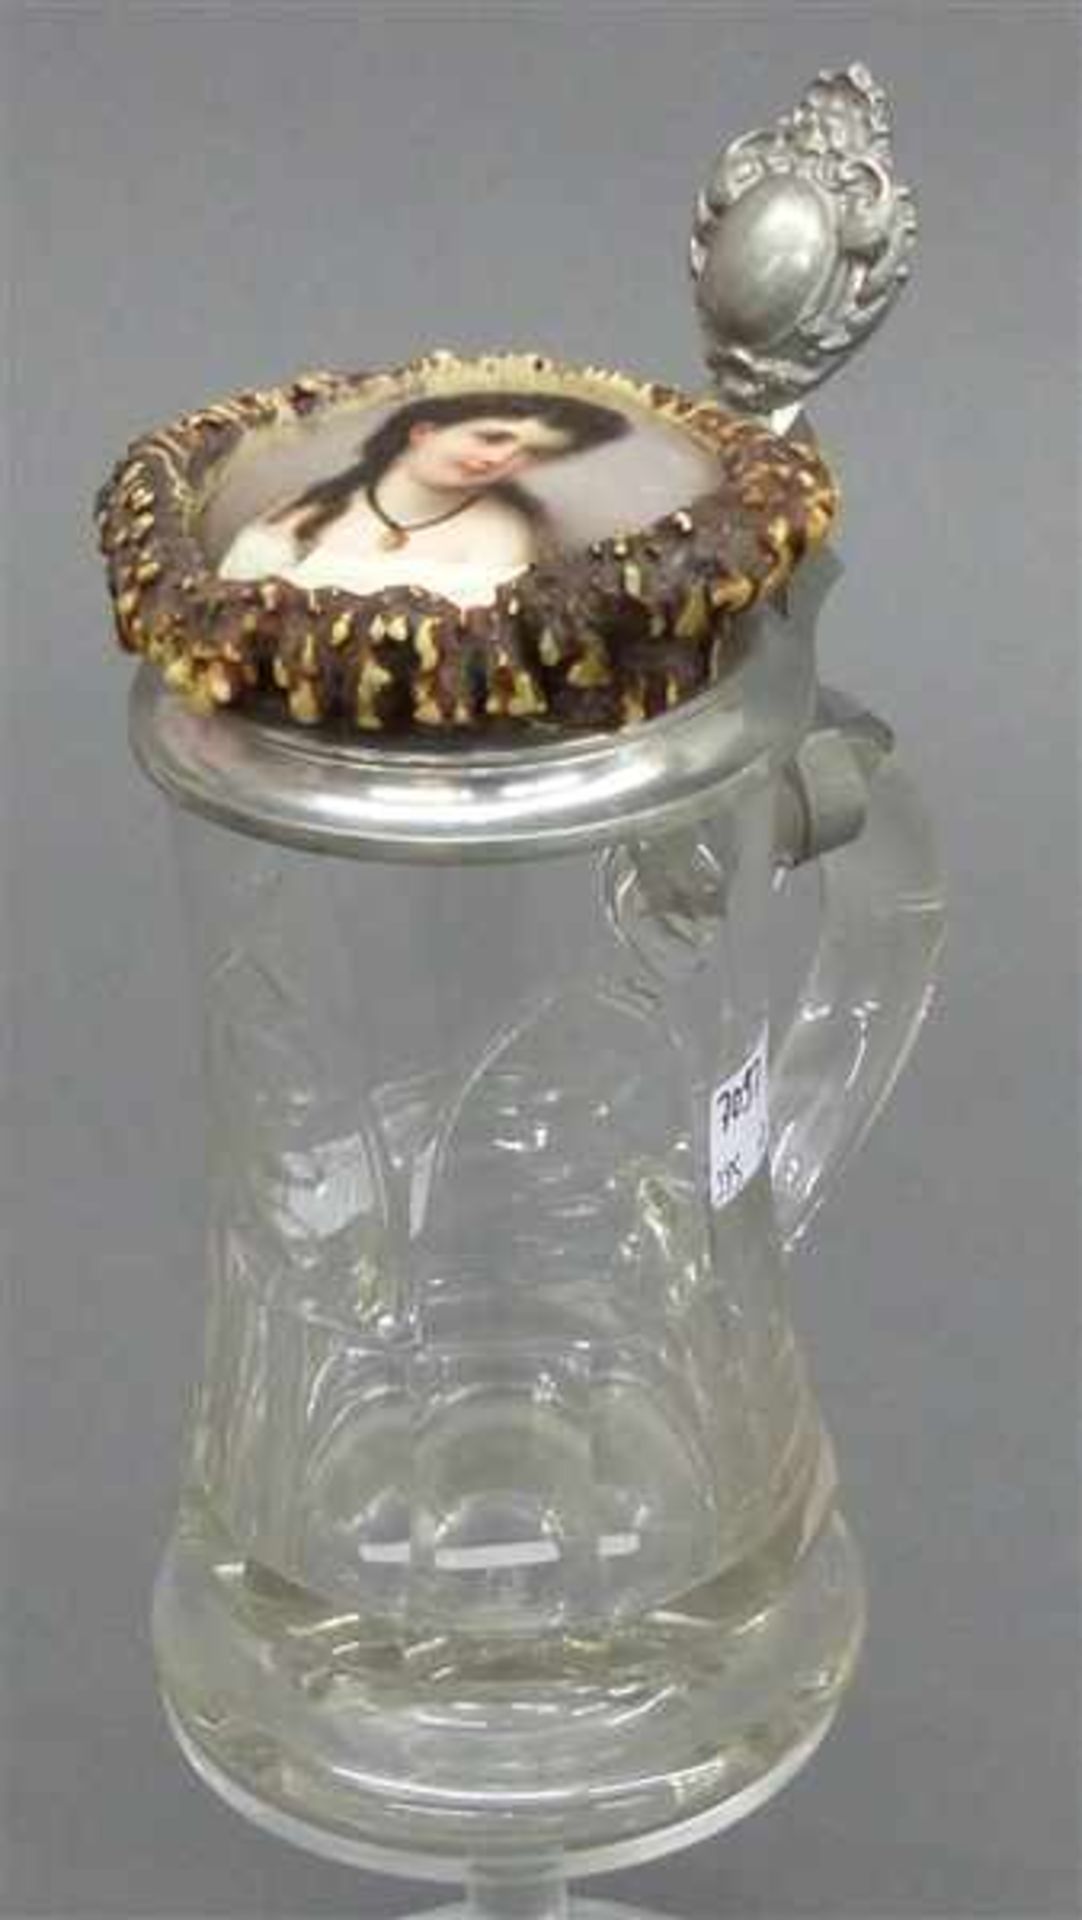 Glasbierkrugfarblos, beschliffen, 0,5 Liter, um 1900, Zinndeckel mit bemaltem Porzellaneinsatz und